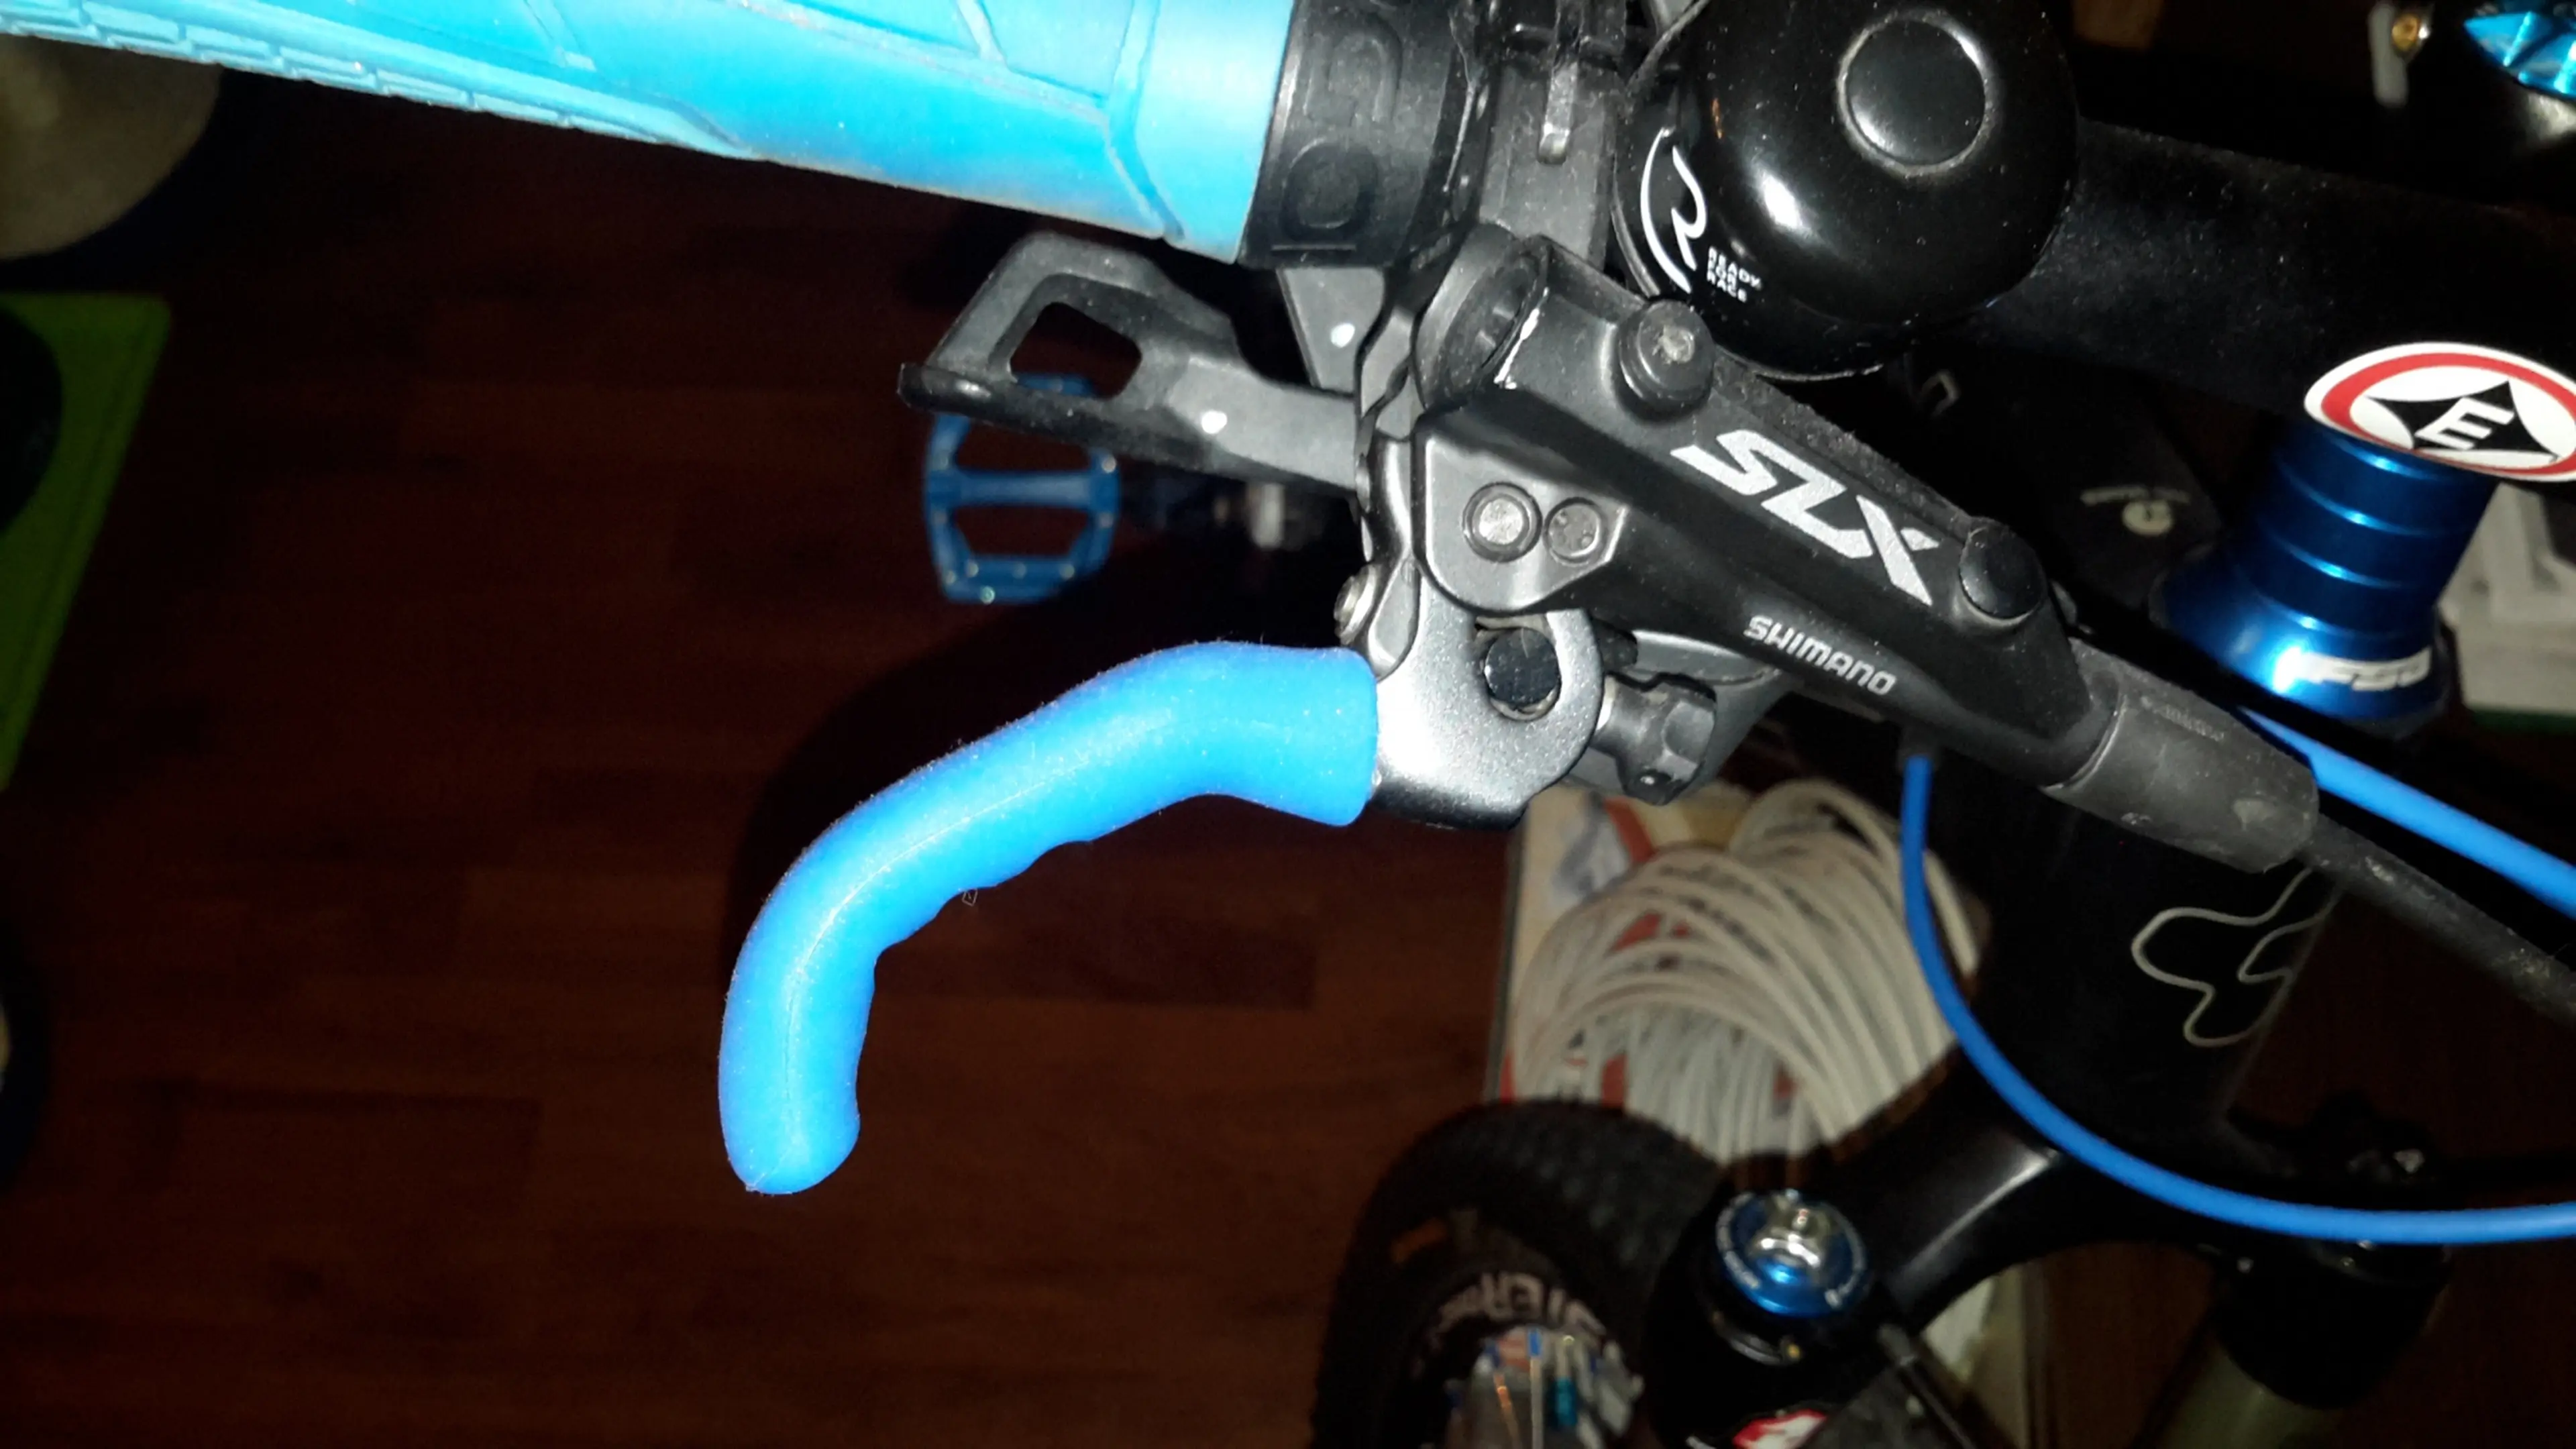 3. Protectie leviere manete frana - silicon - personalizare bike